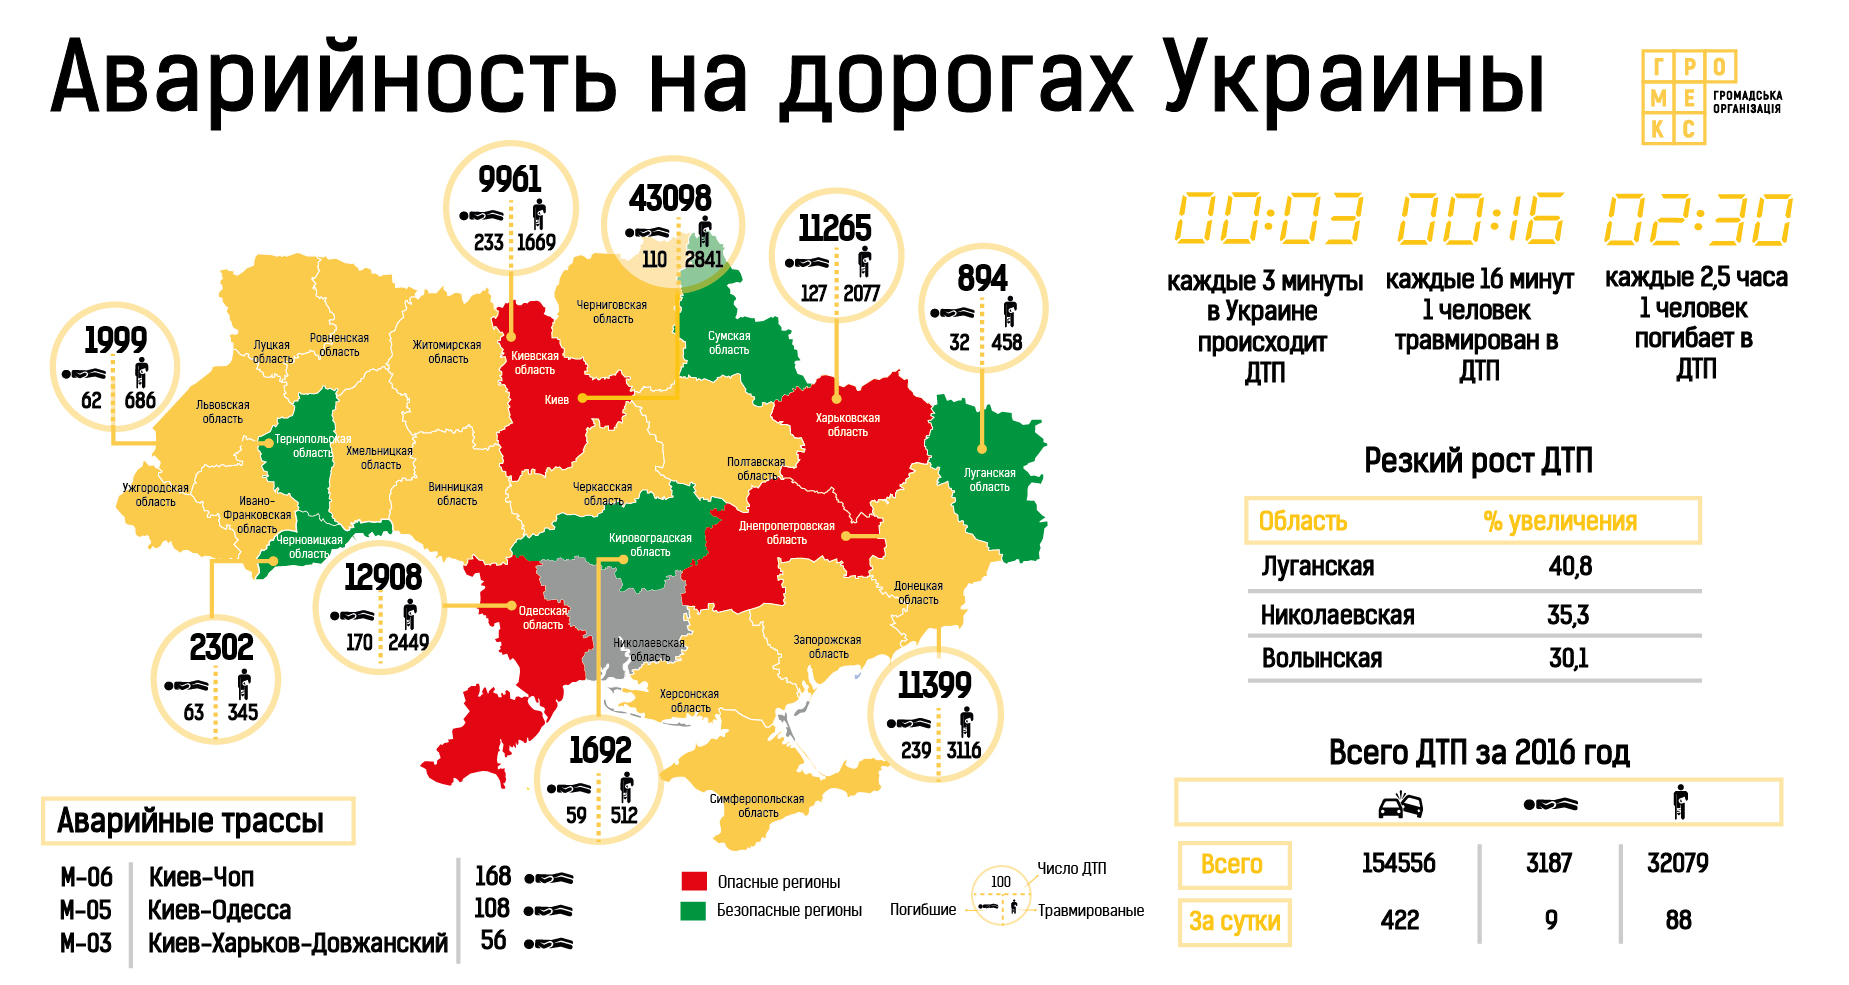 Одесская область признана самой аварийно-опасной в государстве